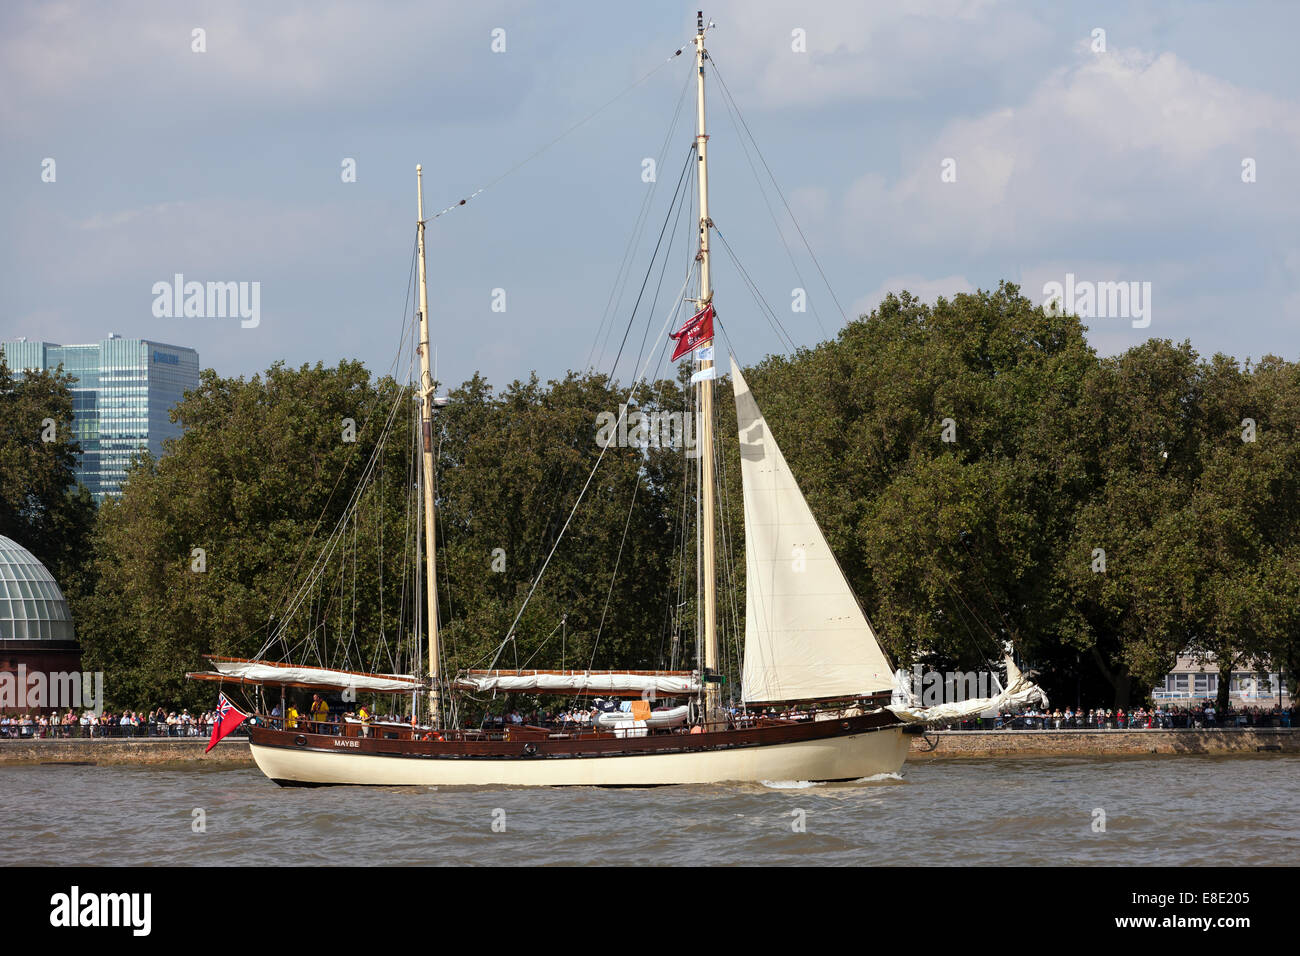 Tal vez, un holandés ketch de vela, tomando parte en el desfile de la vela, durante el Festival Tall Ships, Greenwich. Foto de stock